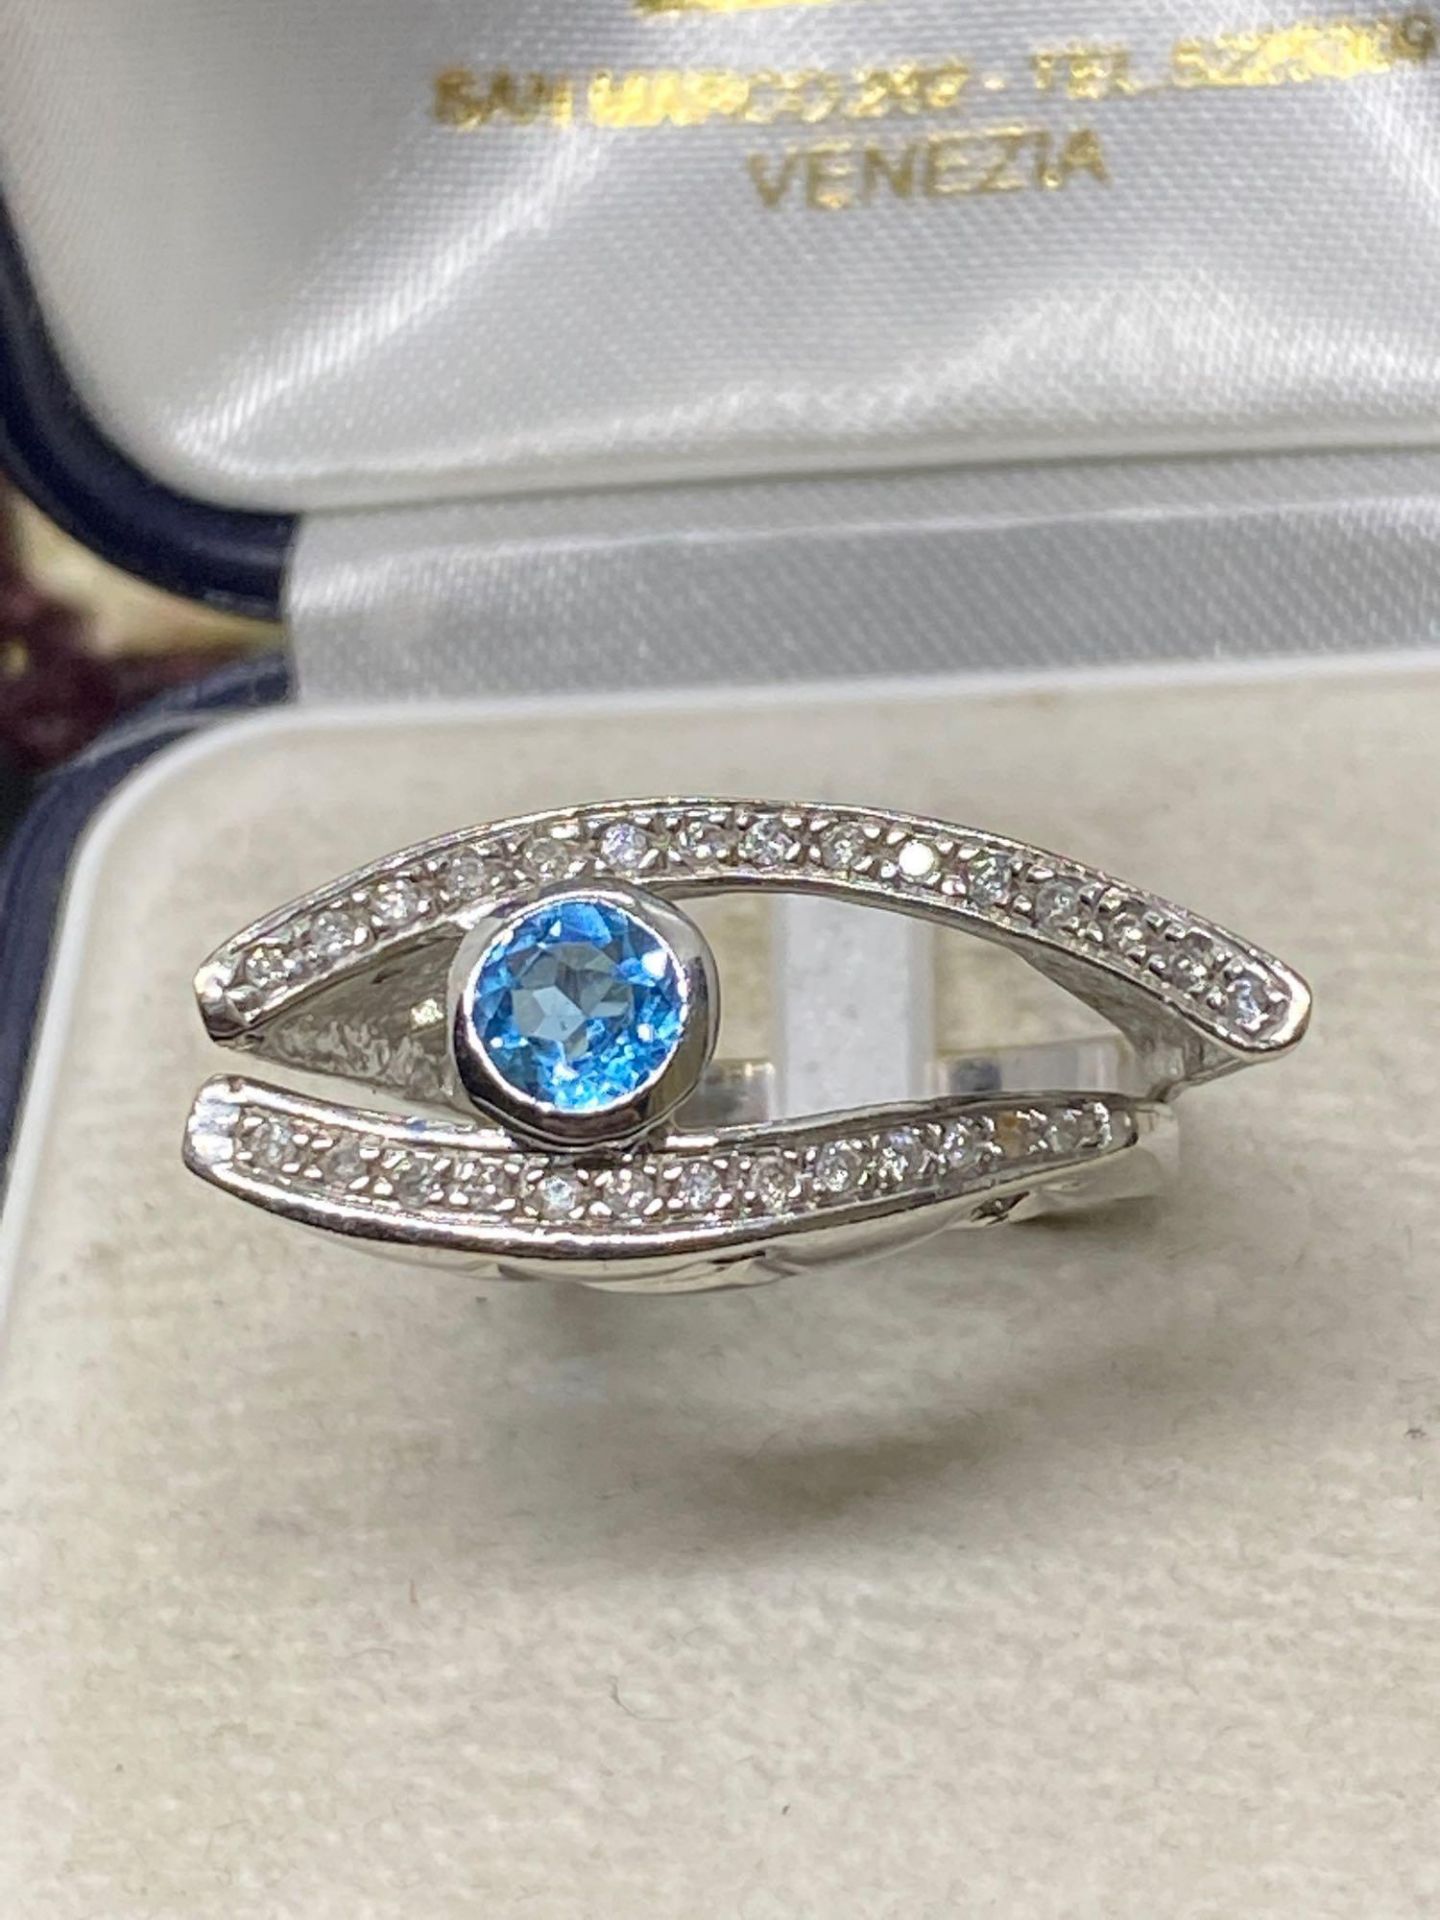 Rare Blue Topaz & Diamond Eye Ring - 14k White Gold - 8 Grams